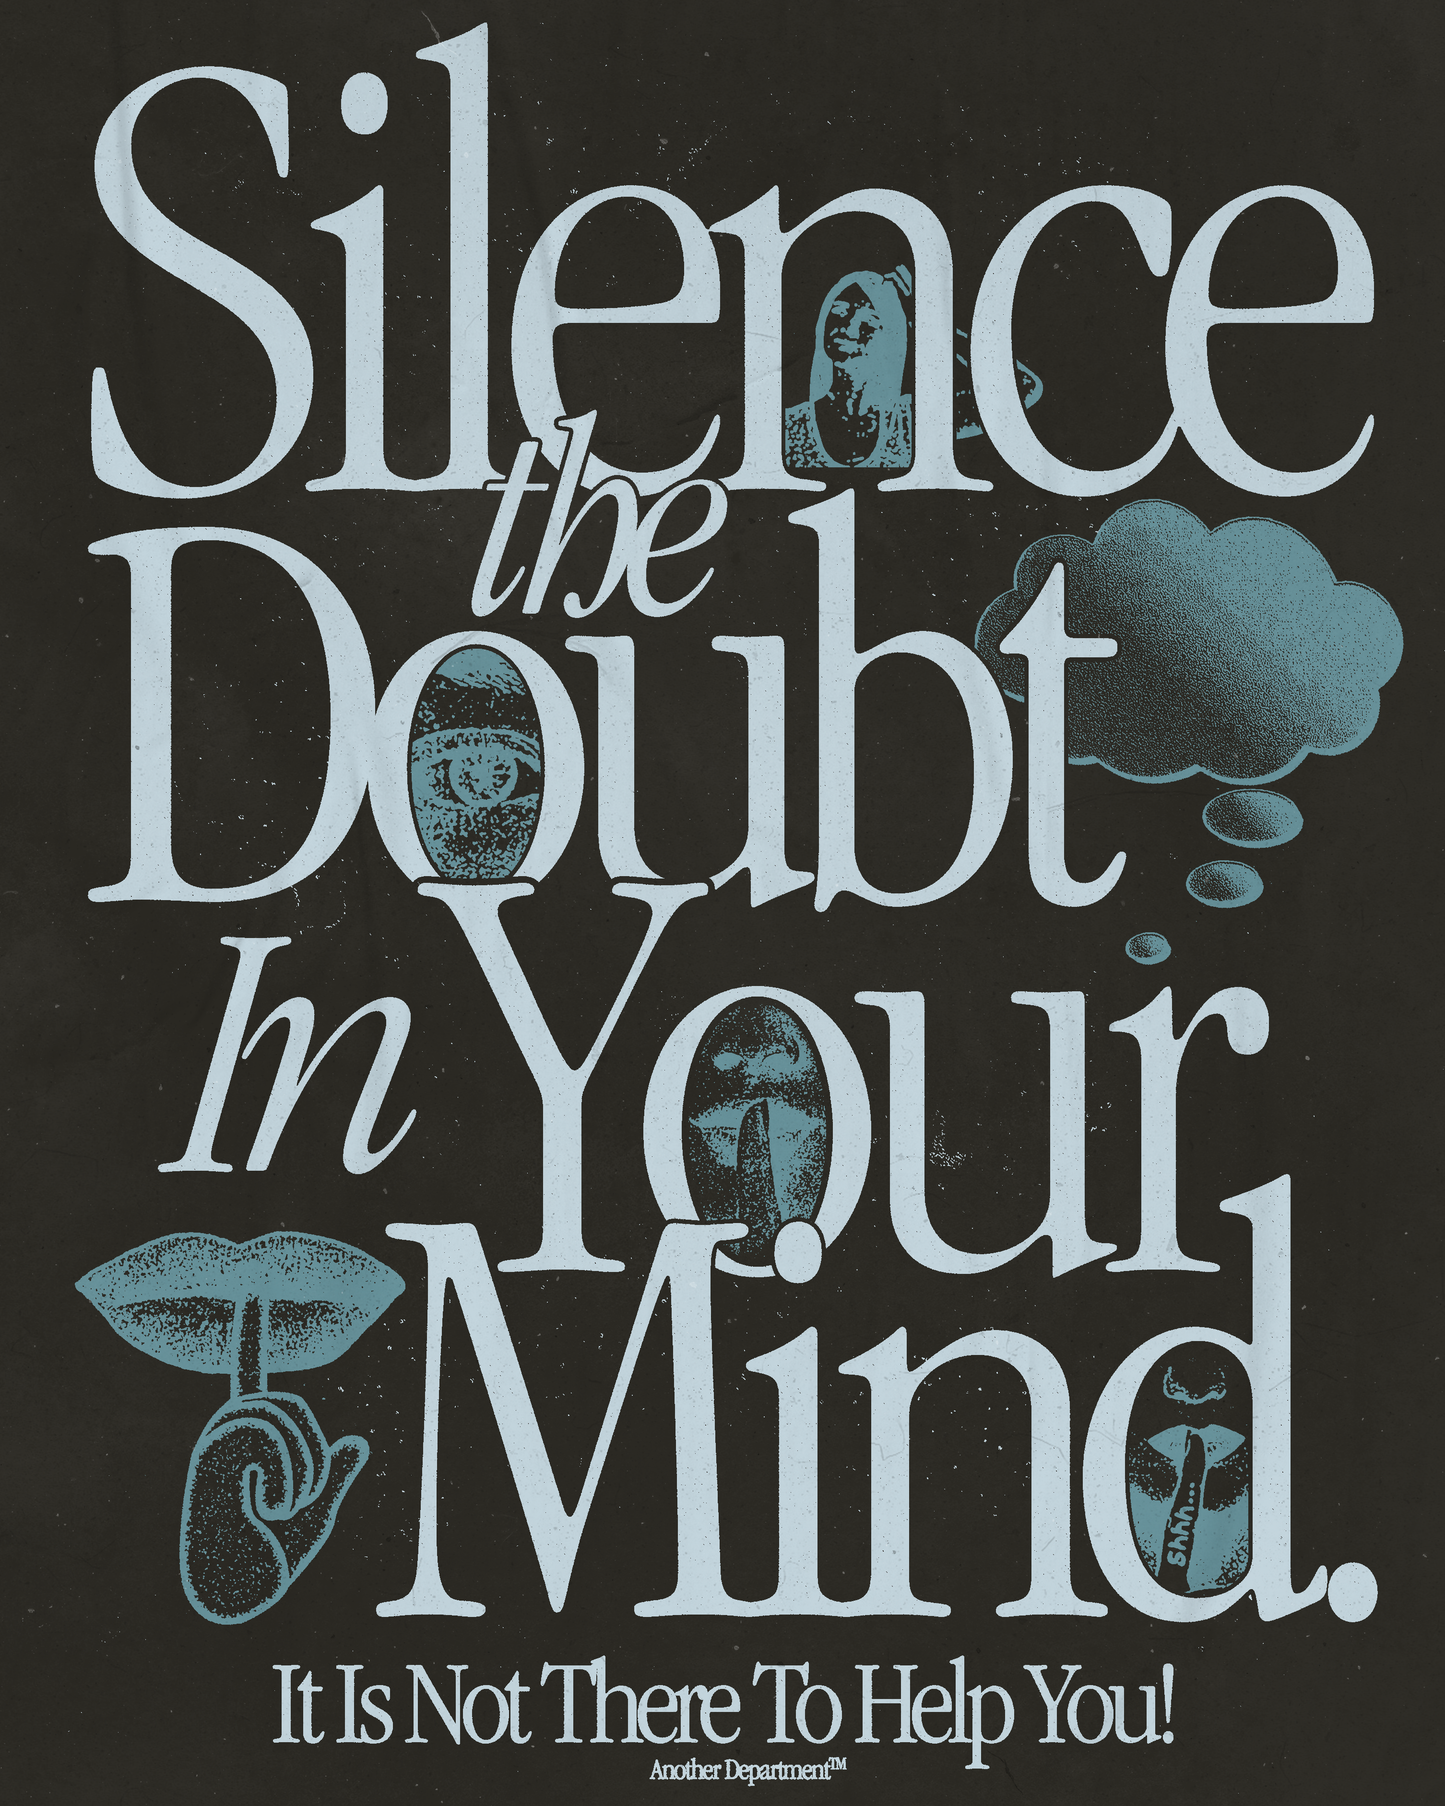 195 - Silence the Doubt